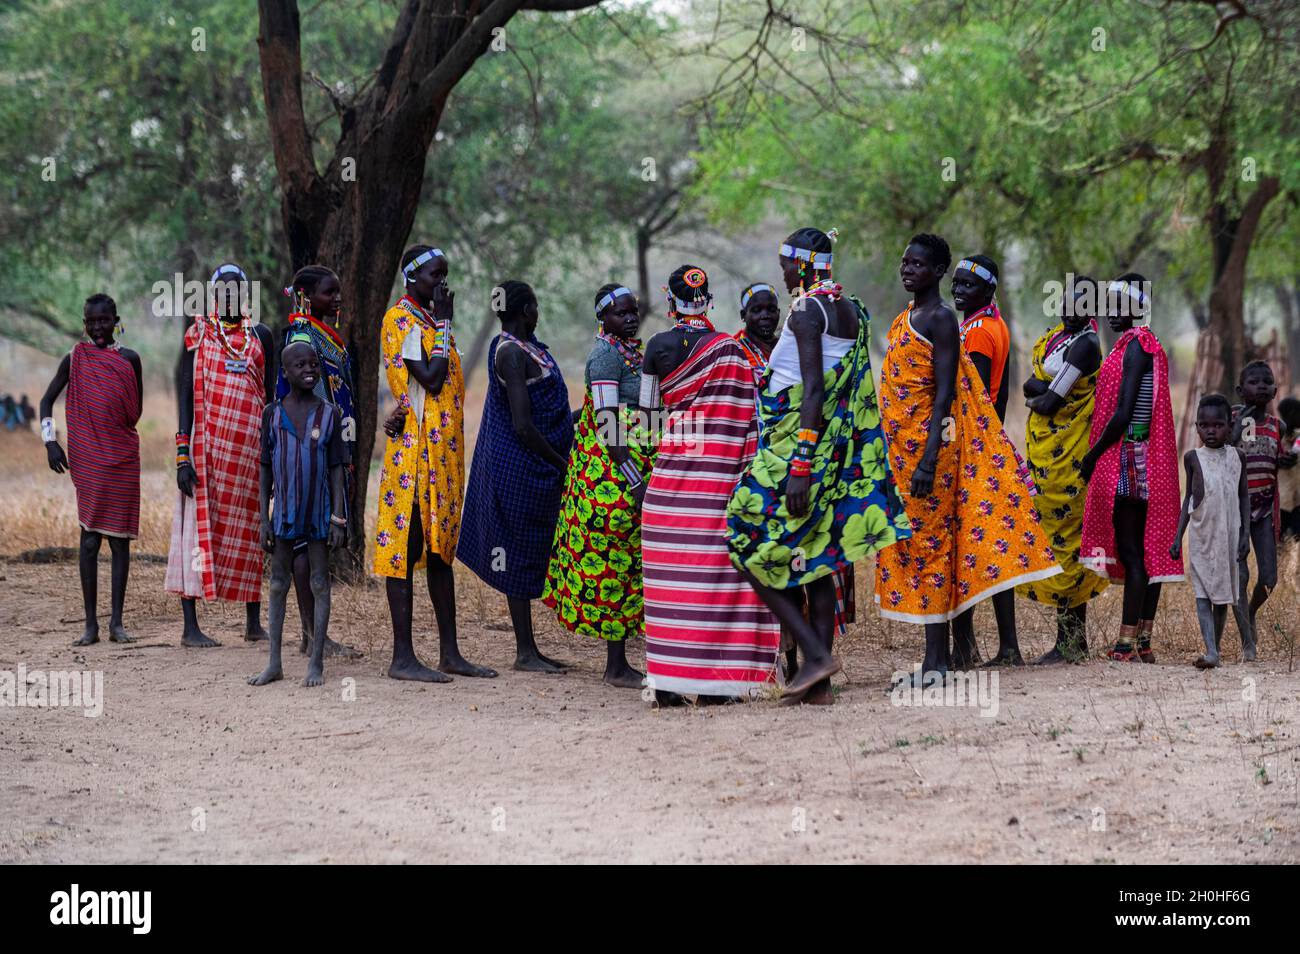 Traditionell gekleidete junge Mädchen aus dem Stamm der Laarim unterhalten sich unter einem Baum, Boya Hills, Eastern Equatoria, Südsudan Stockfoto